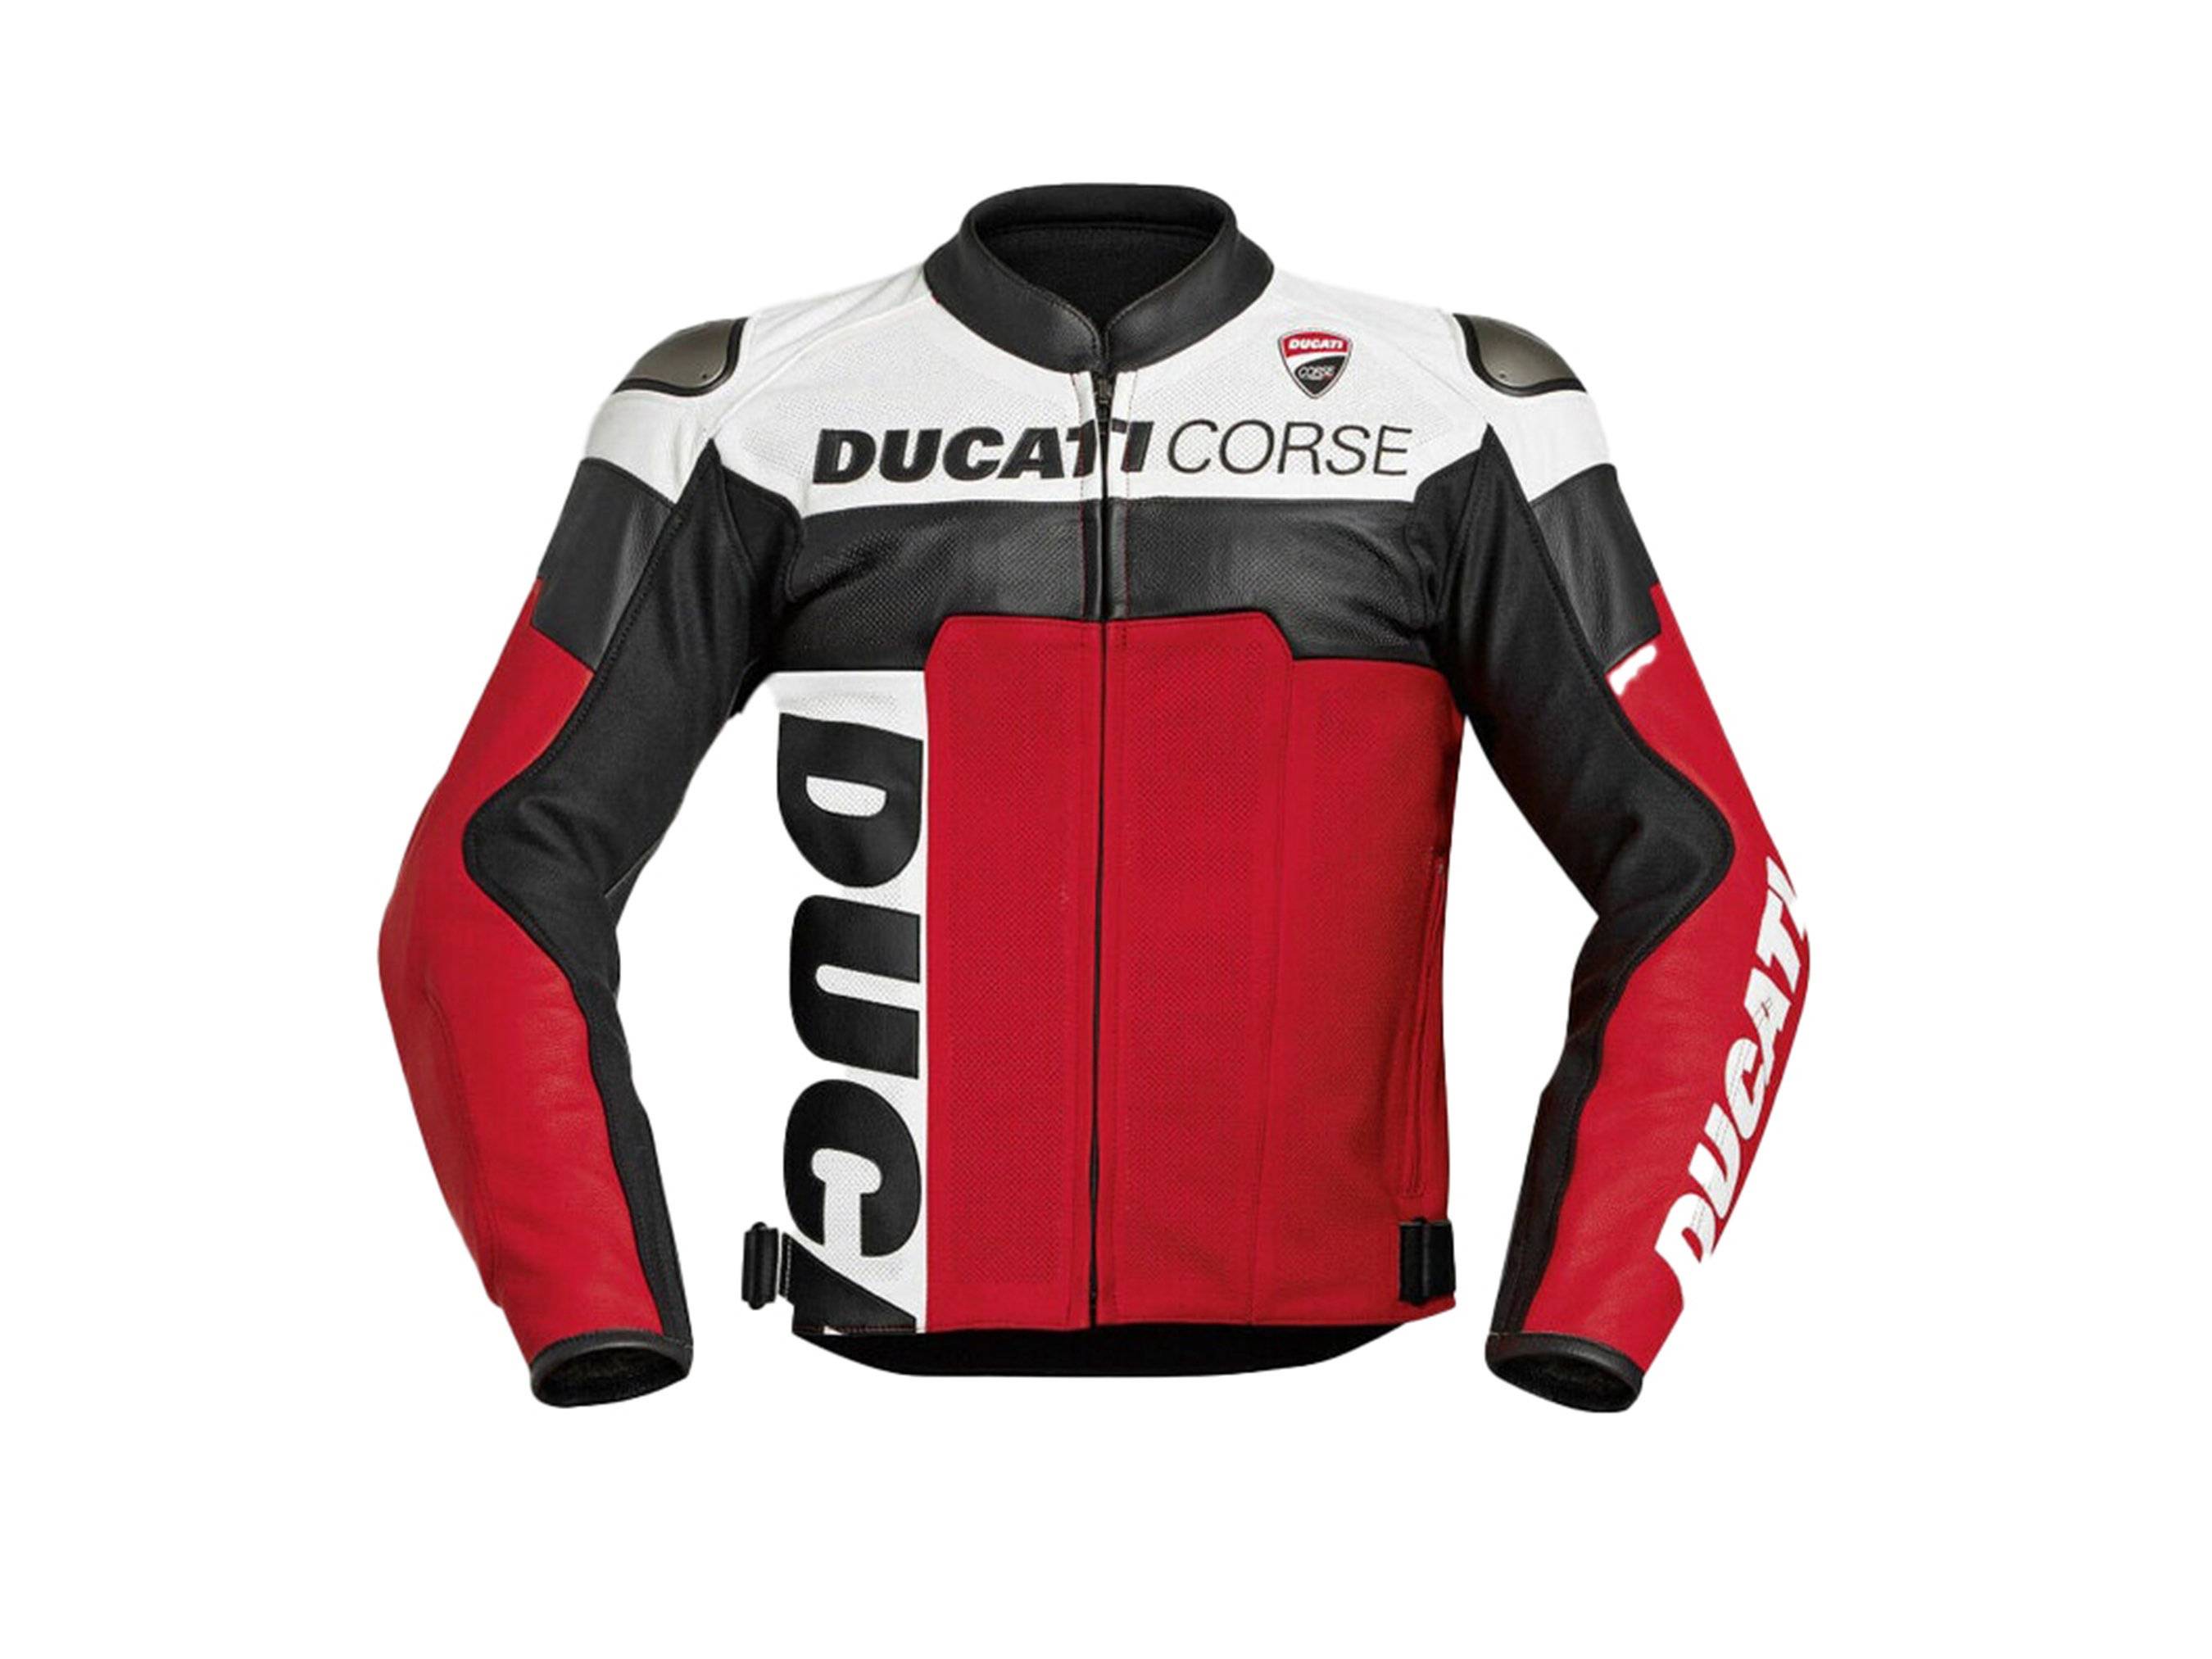 Diesel Ducati Jacket Price | lupon.gov.ph